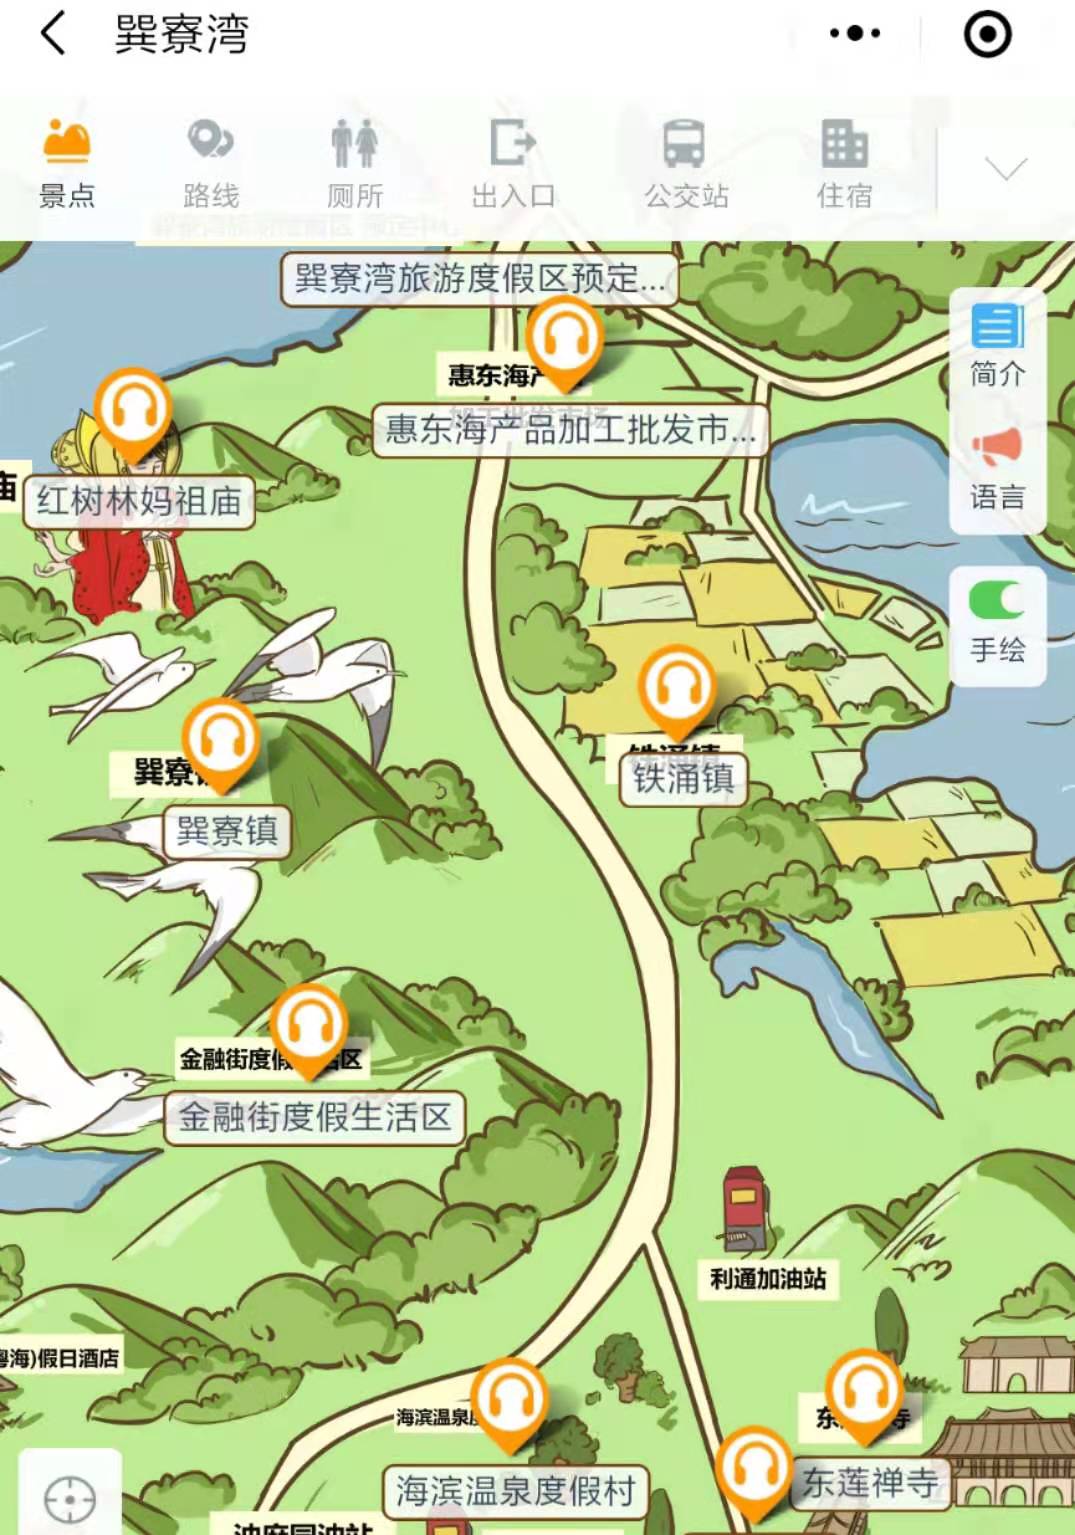 2021年广东惠州巽寮湾电子导览、语音讲解、手绘地图等智能导览系统功能上线了.jpg